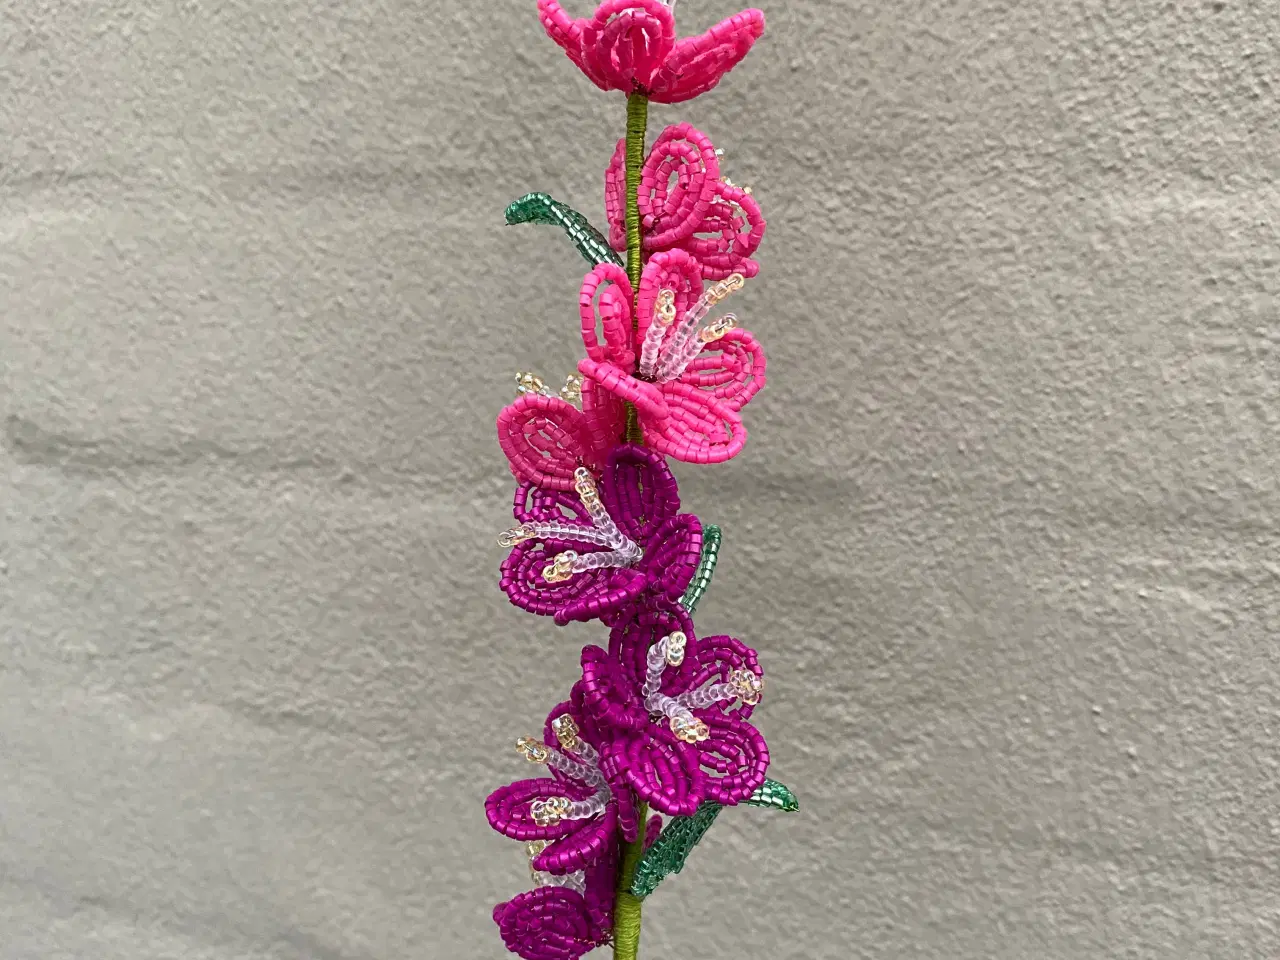 Billede 14 - Unikke evigheds blomster, lavet af perler